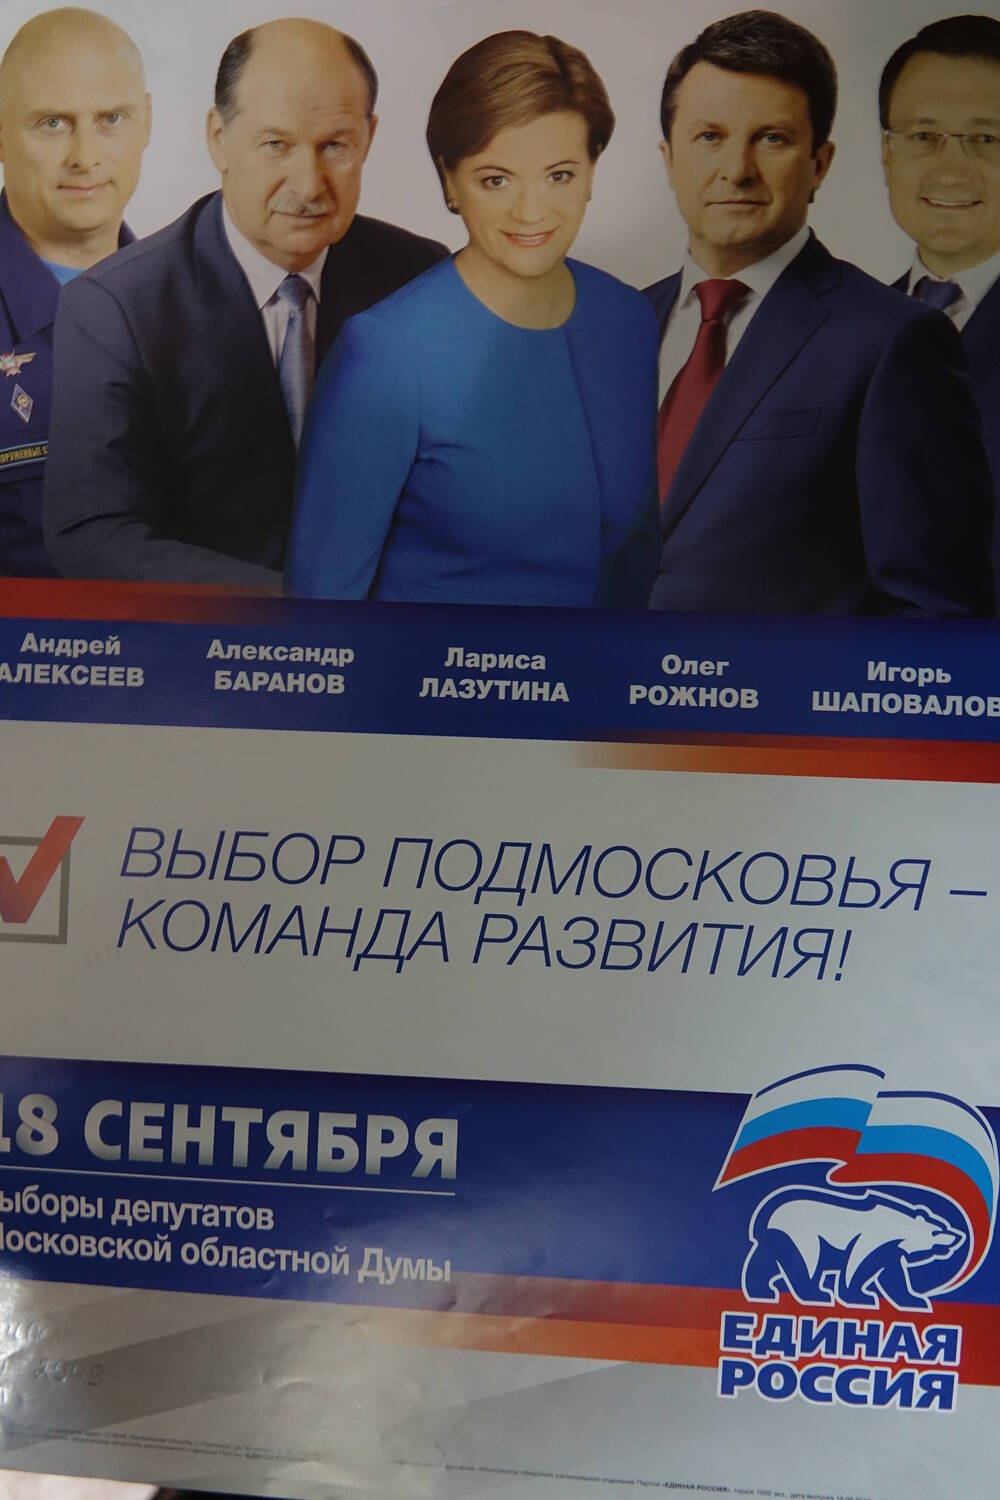 Плакат «Выбор Подмосковья» с изображением   кандидатов от партии «Единая Россия»